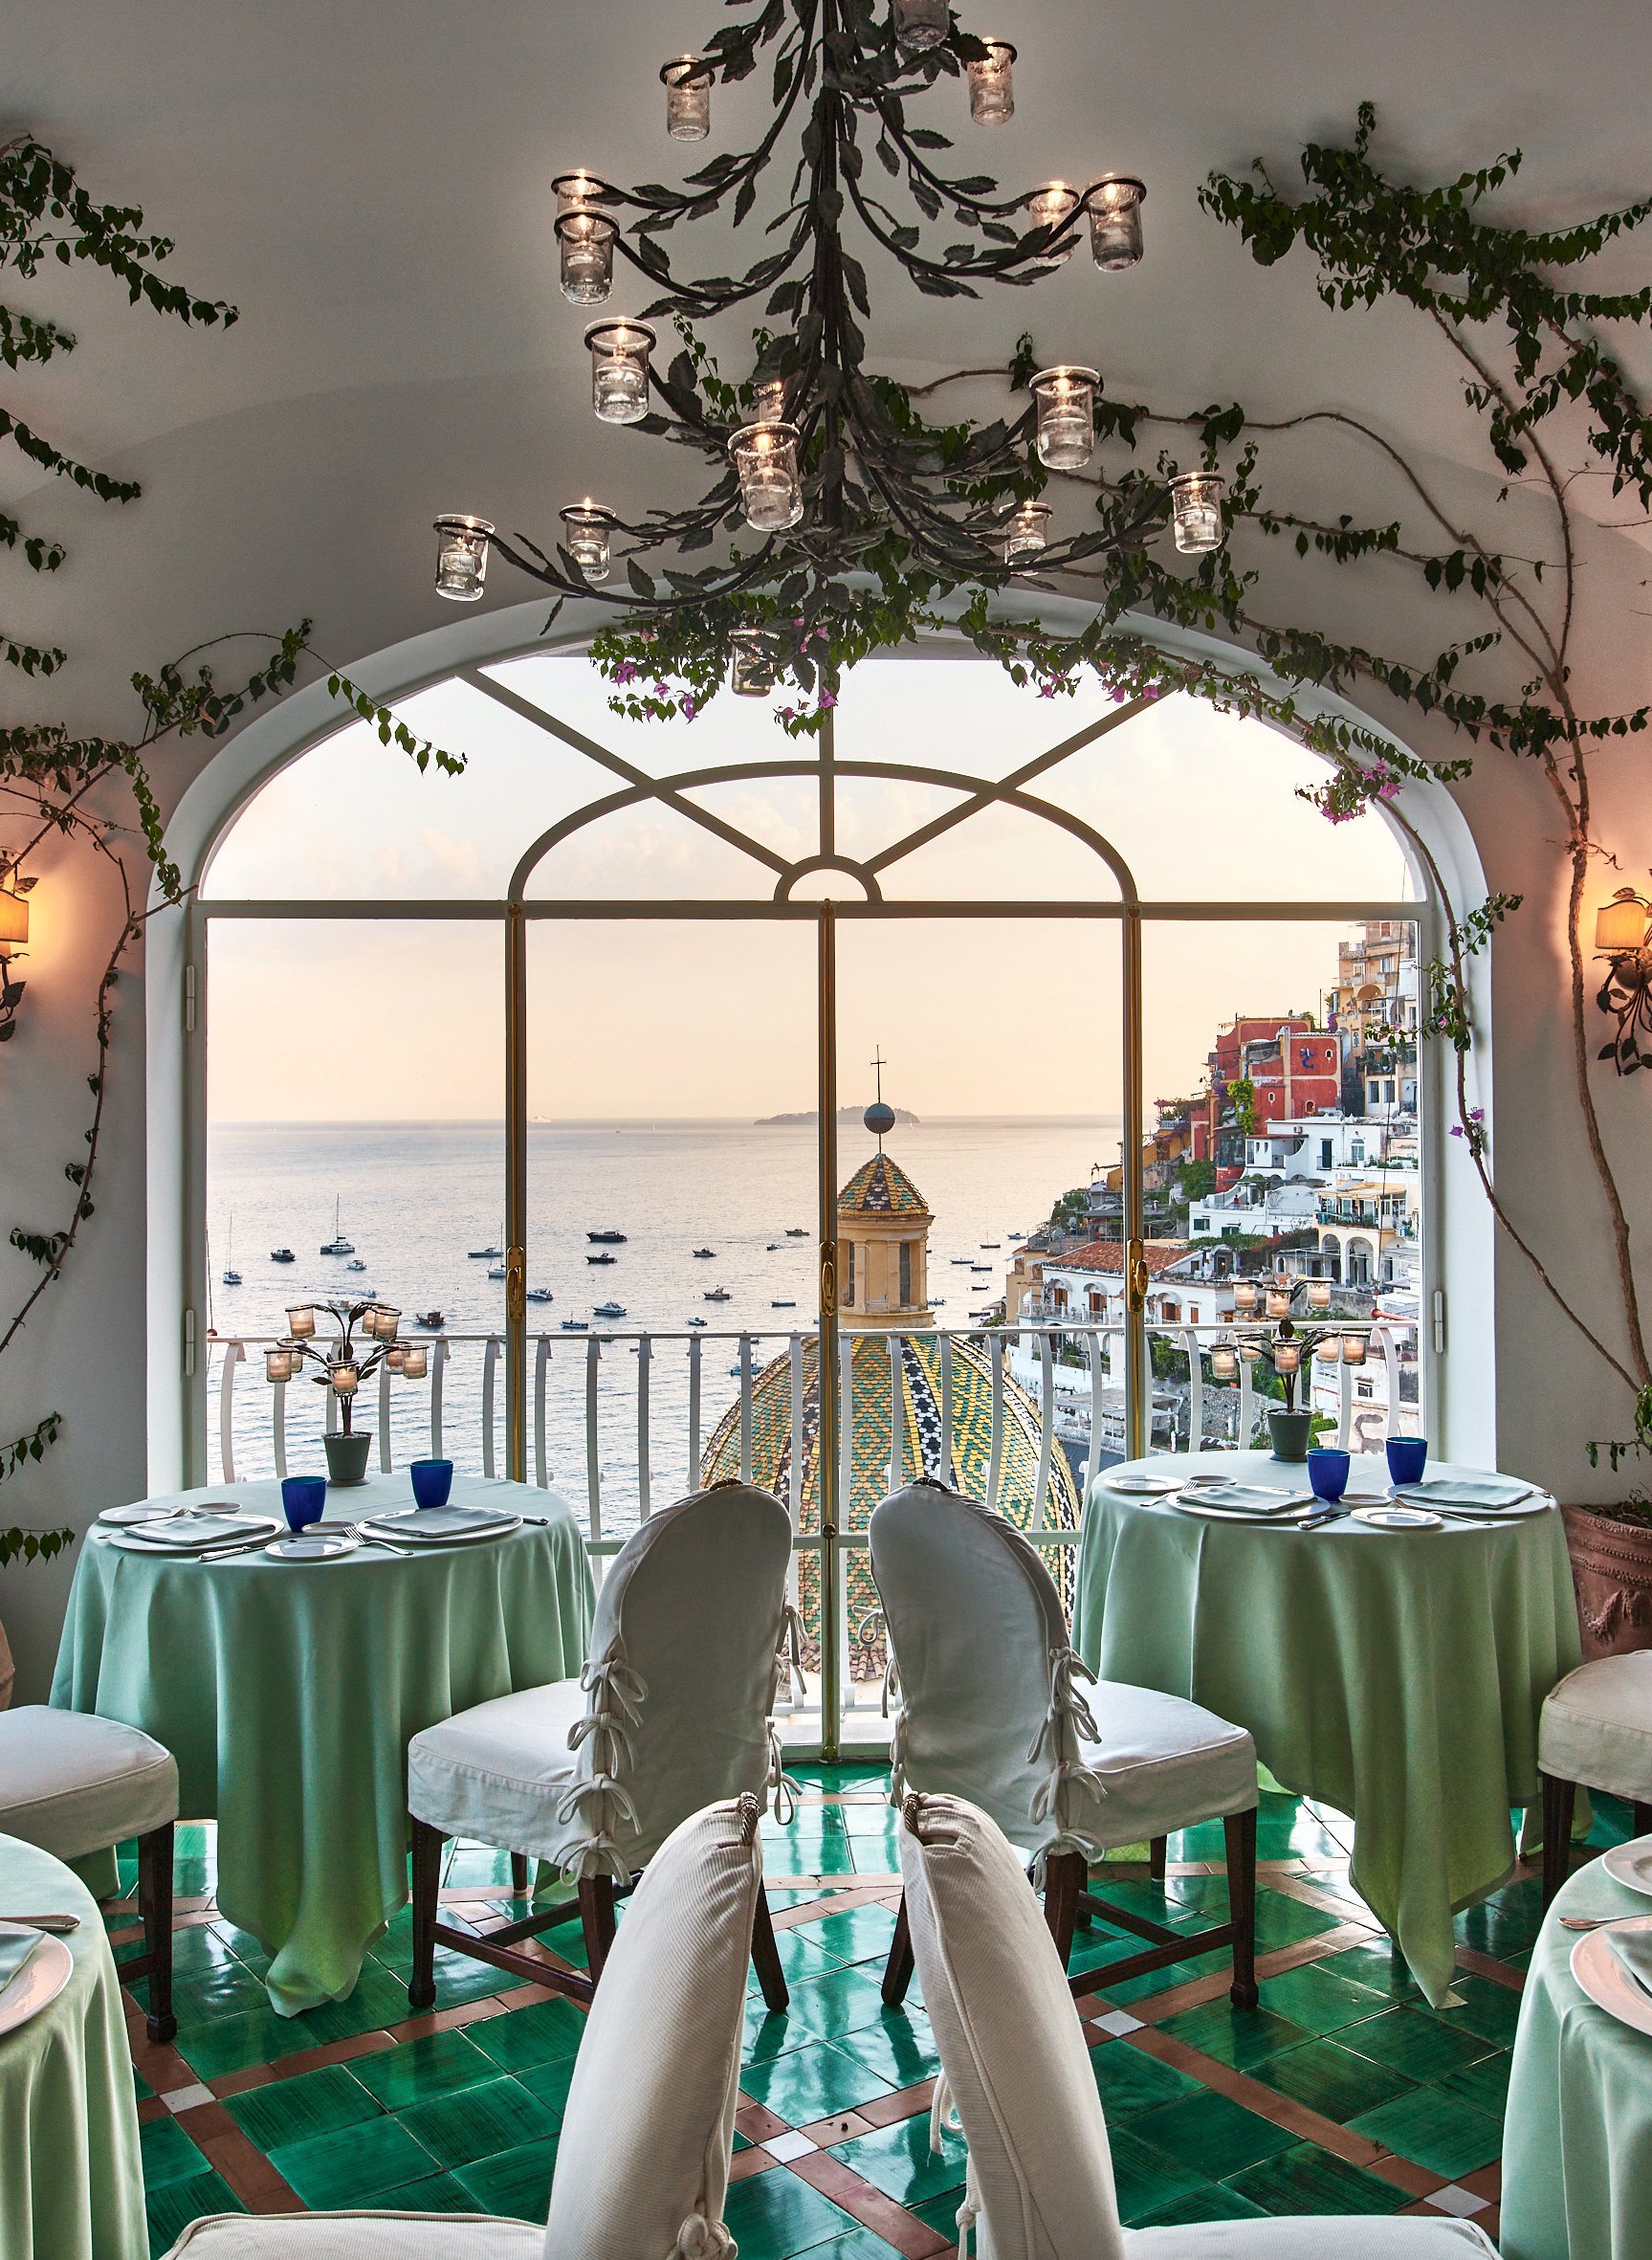 Restaurant »La Sponda« im Hotel »Le Sirenuse« in Positano an der Amalfiküste in Italien.